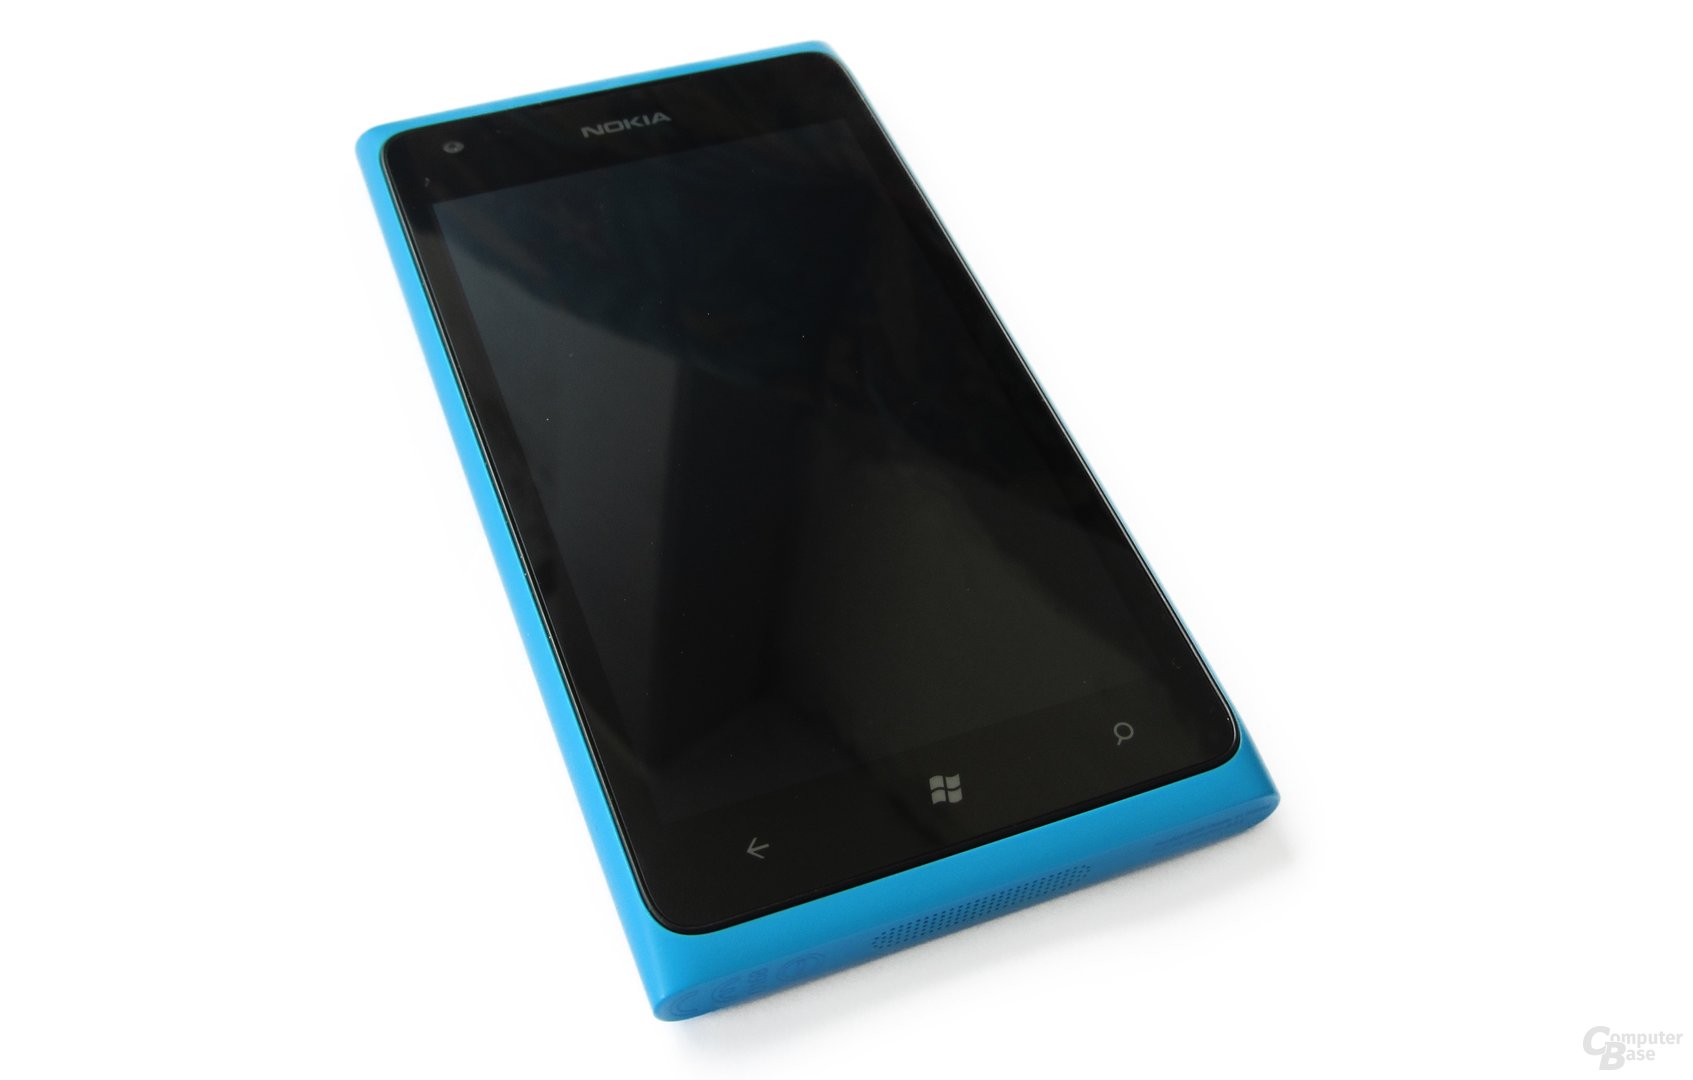 Nokia Lumia 900